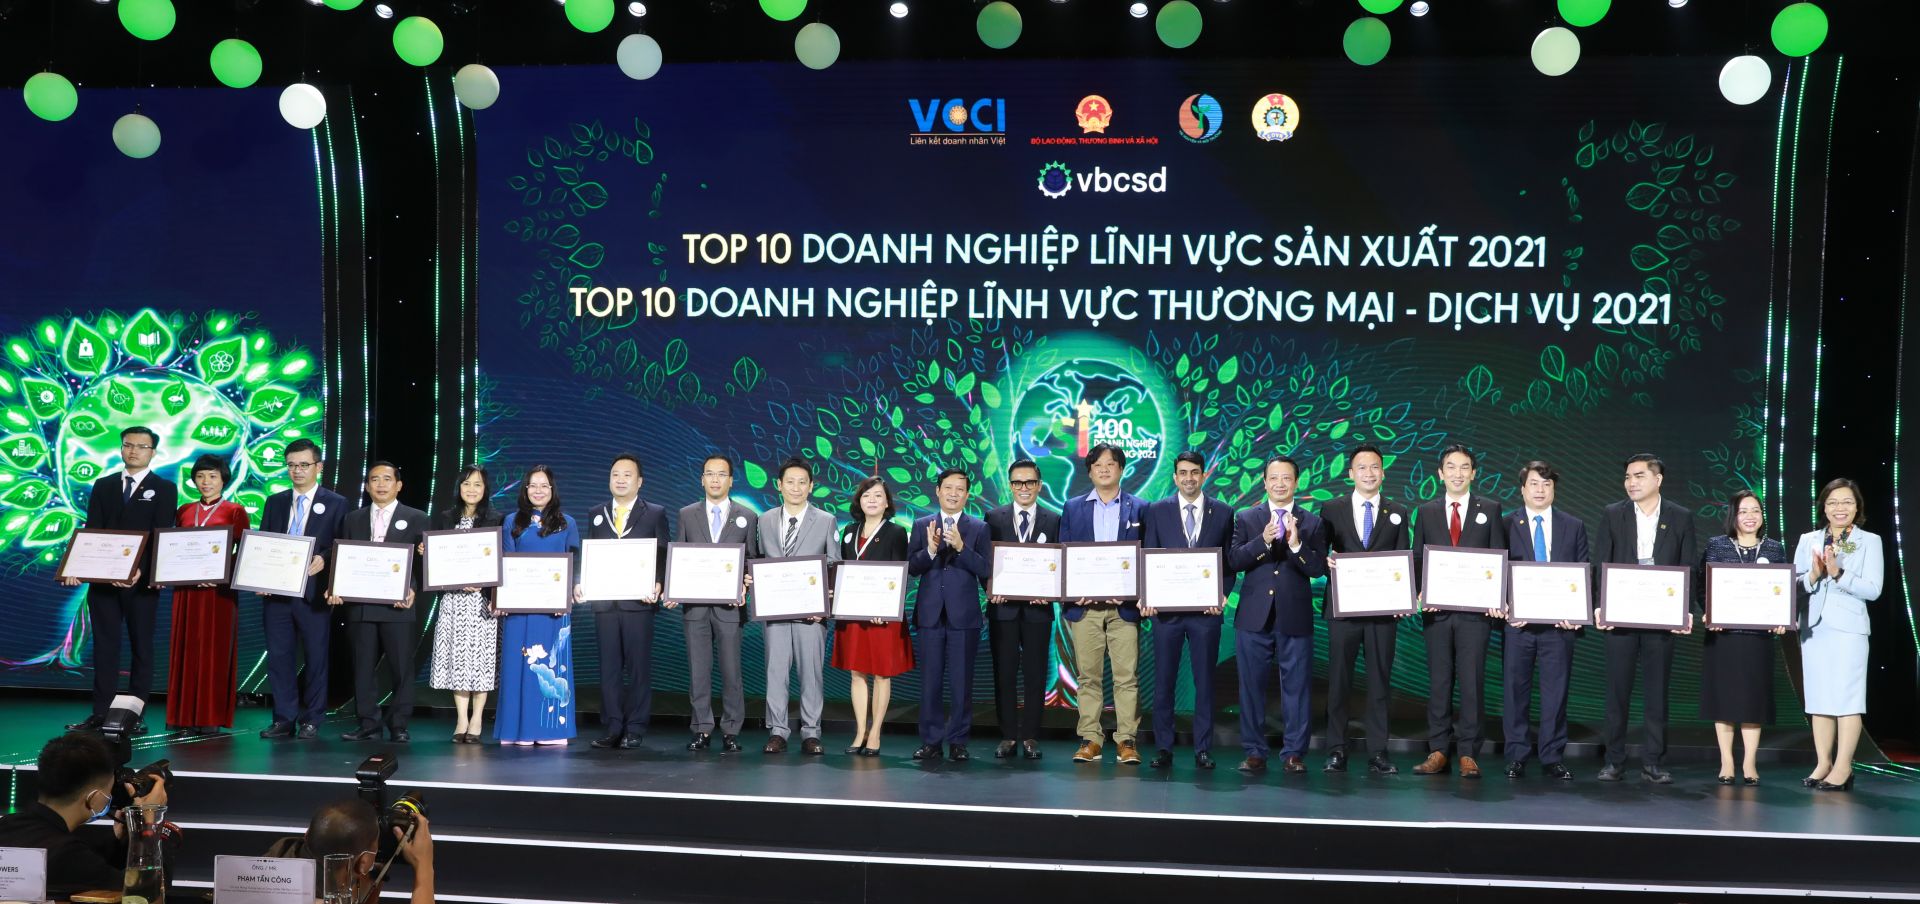 Nestlé Việt Nam được vinh danh là doanh nghiệp bền vững nhất Việt Nam năm 2021 trong lĩnh vực sản xuất